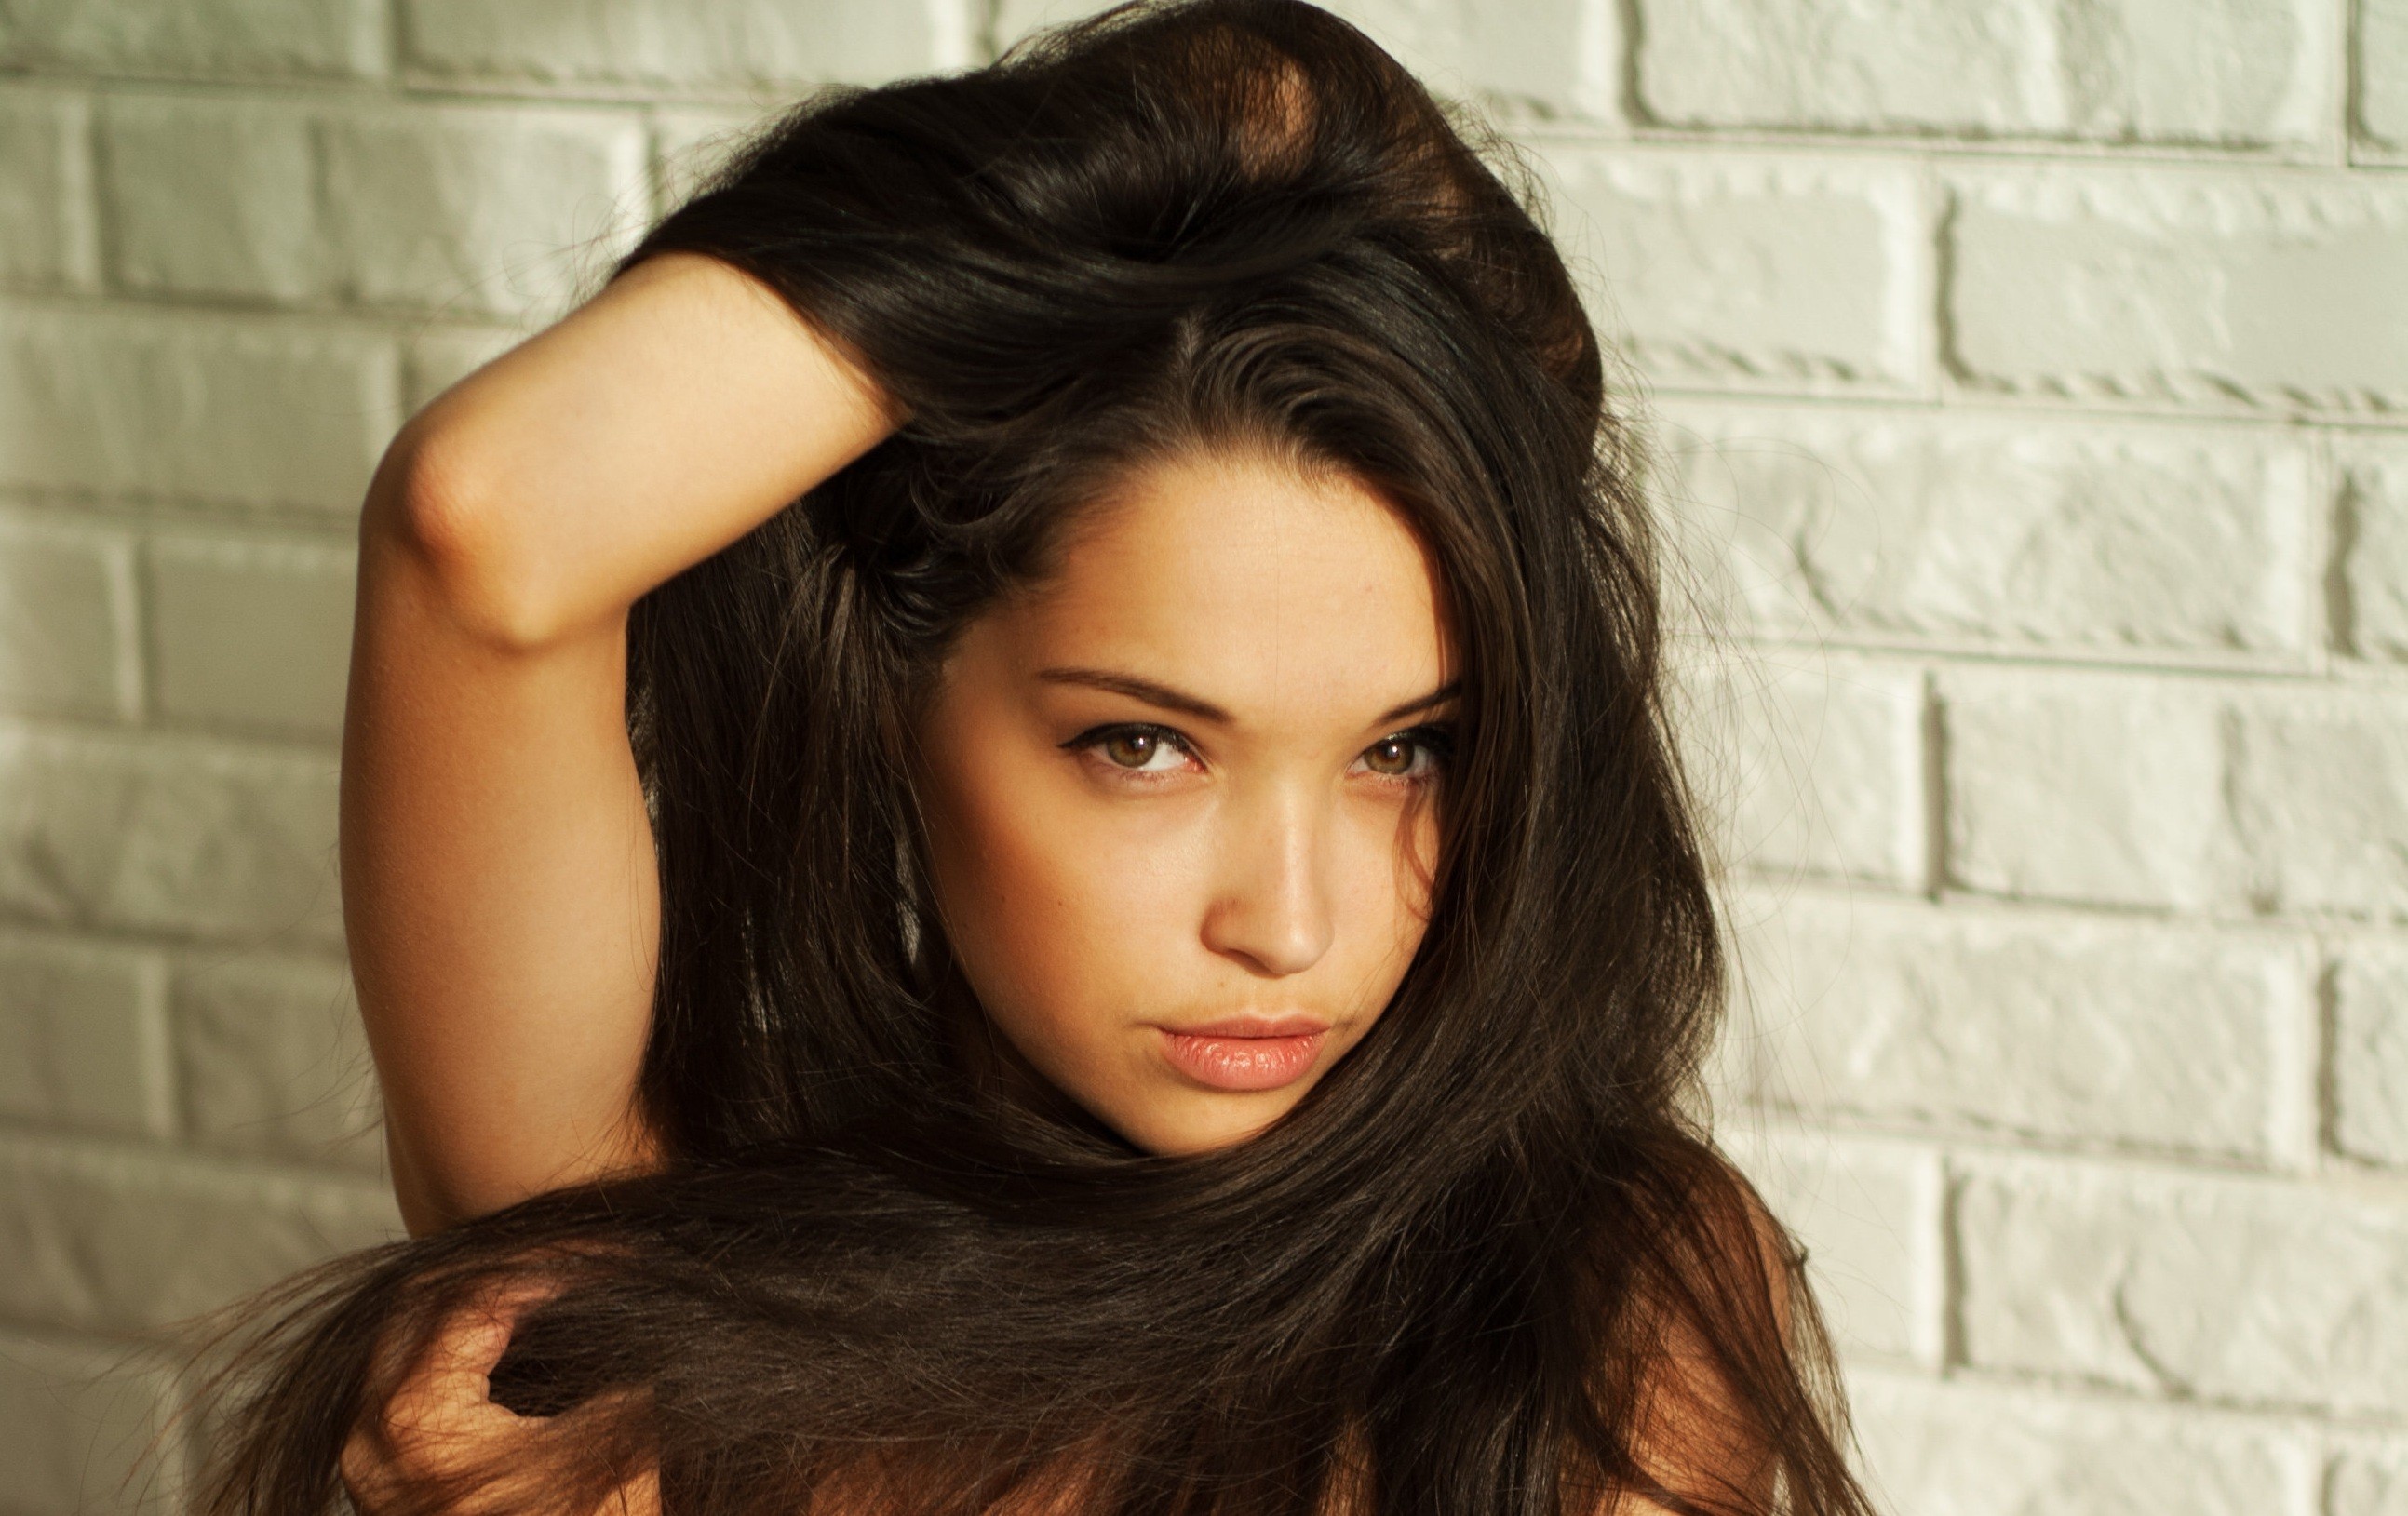 women model brunette long hair face bricks Wallpaper